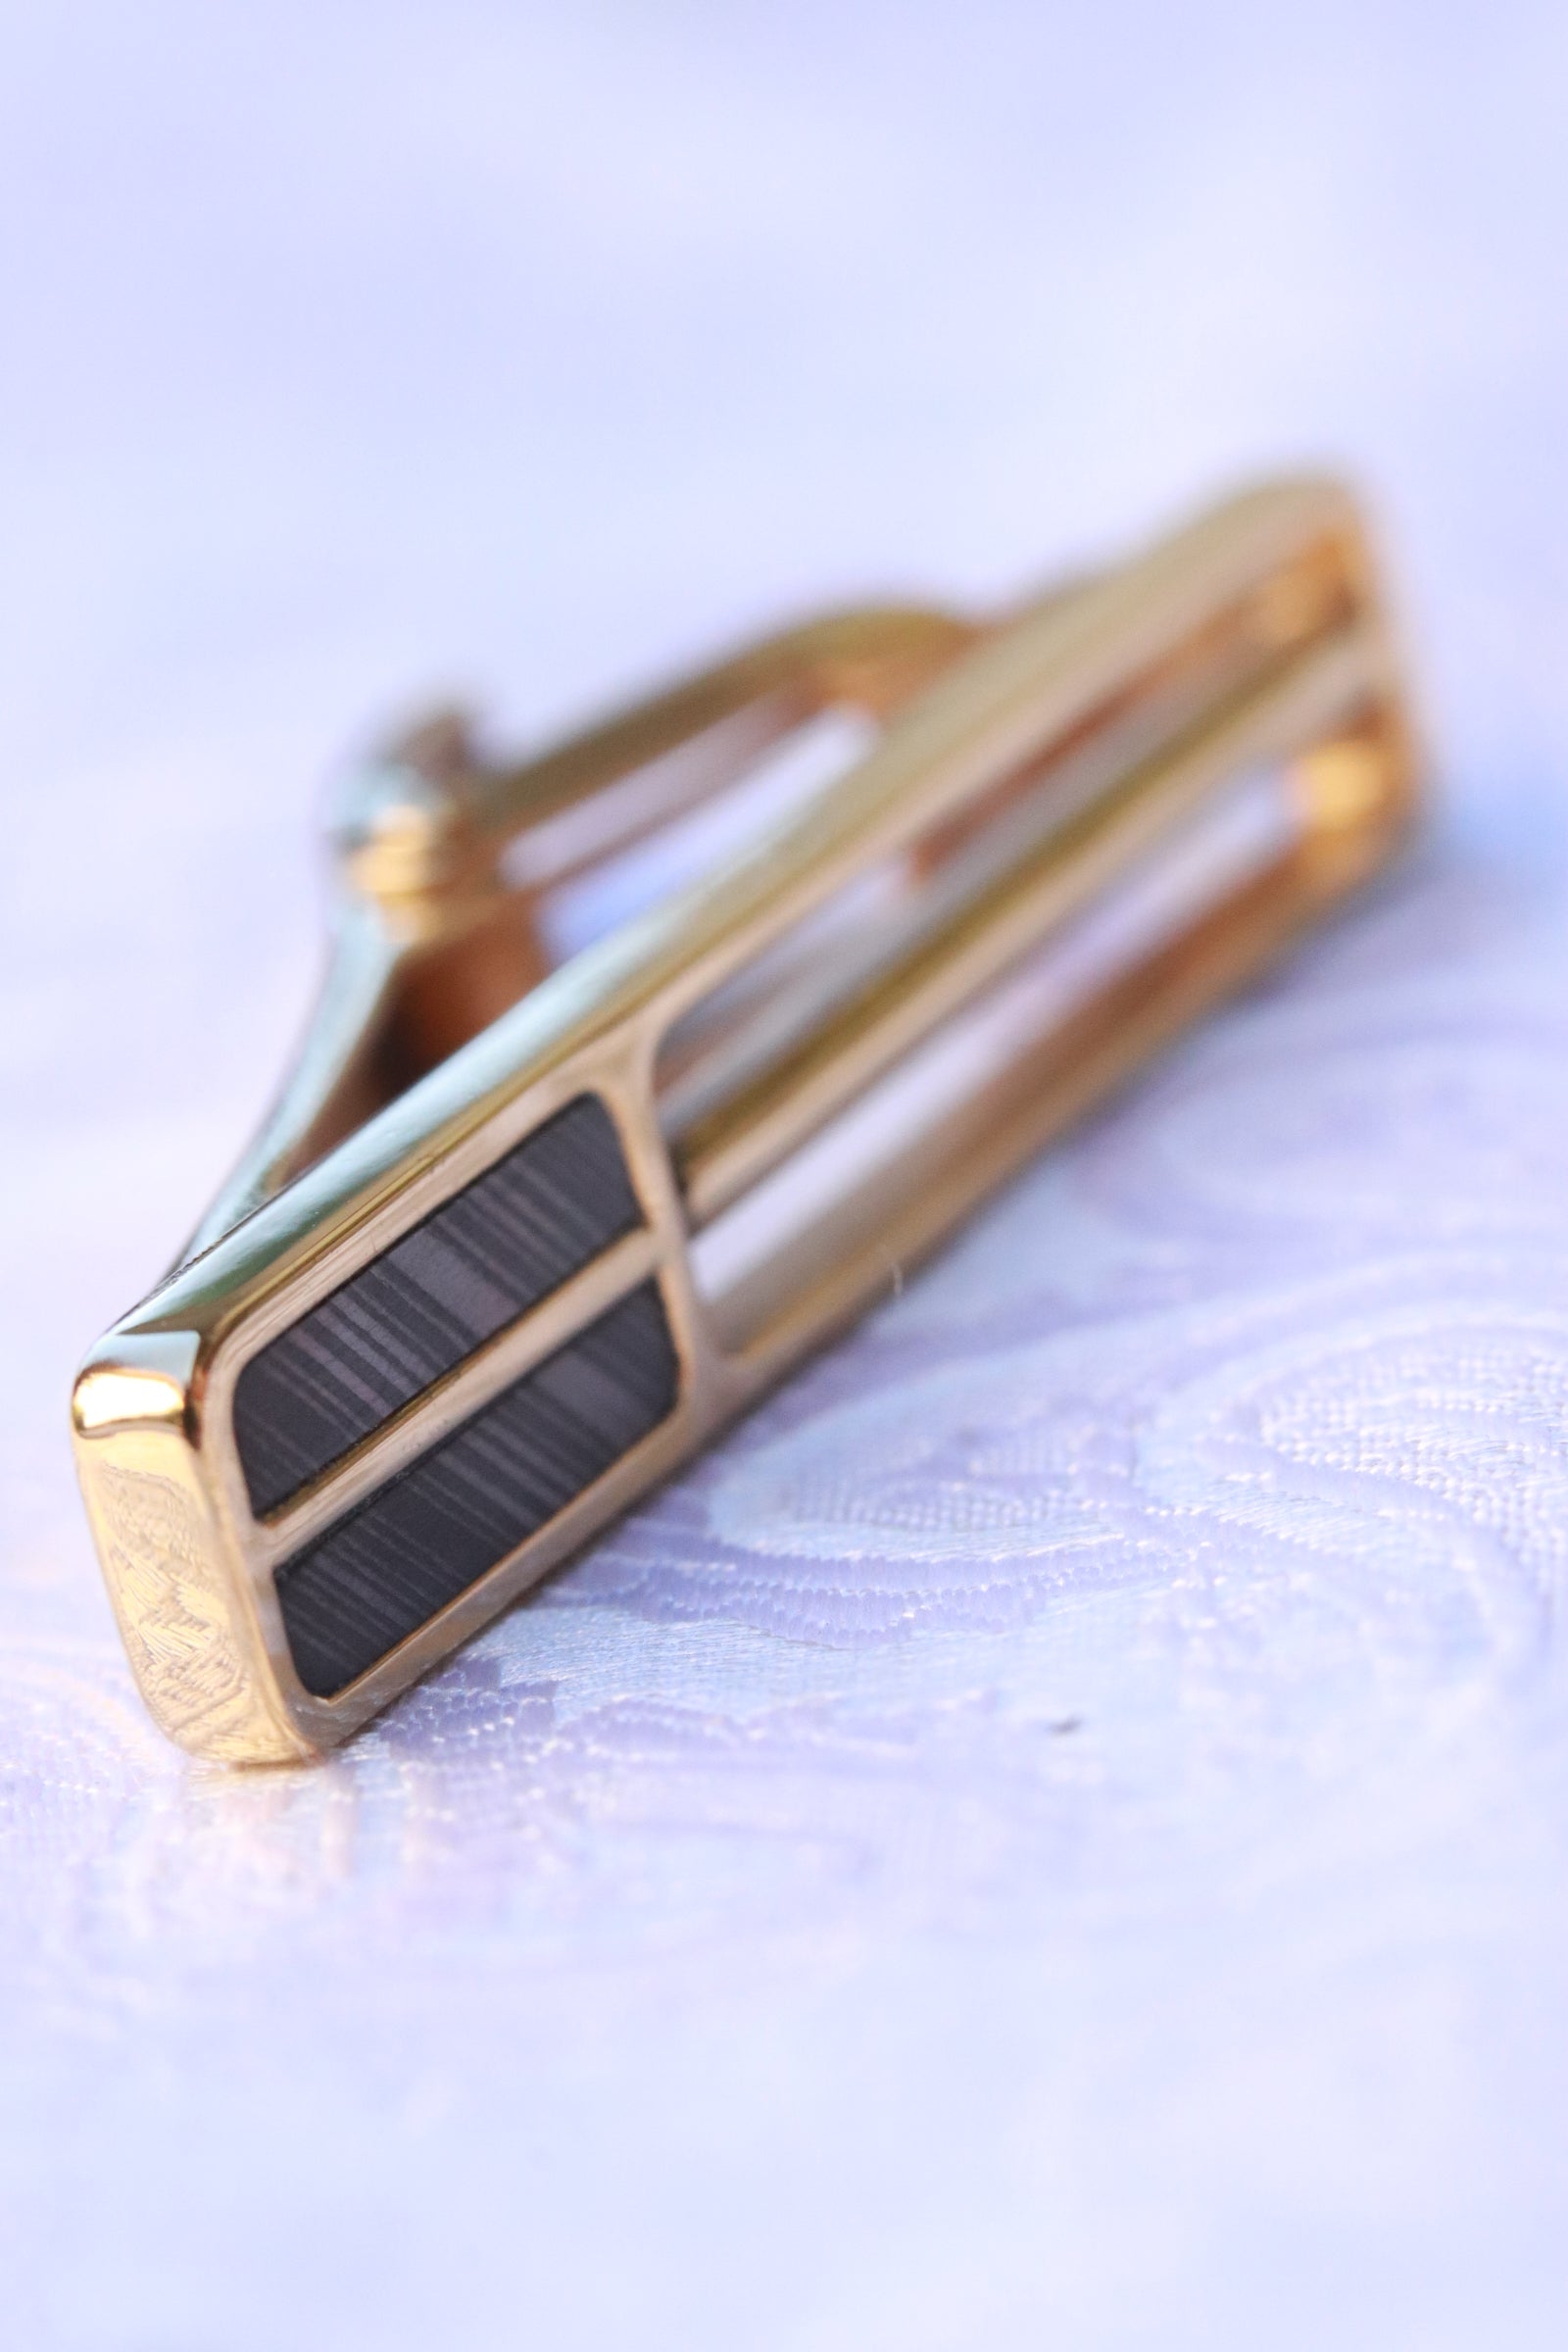 18k Gold tie clip / tie bar – JBlunt Designs, Inc.